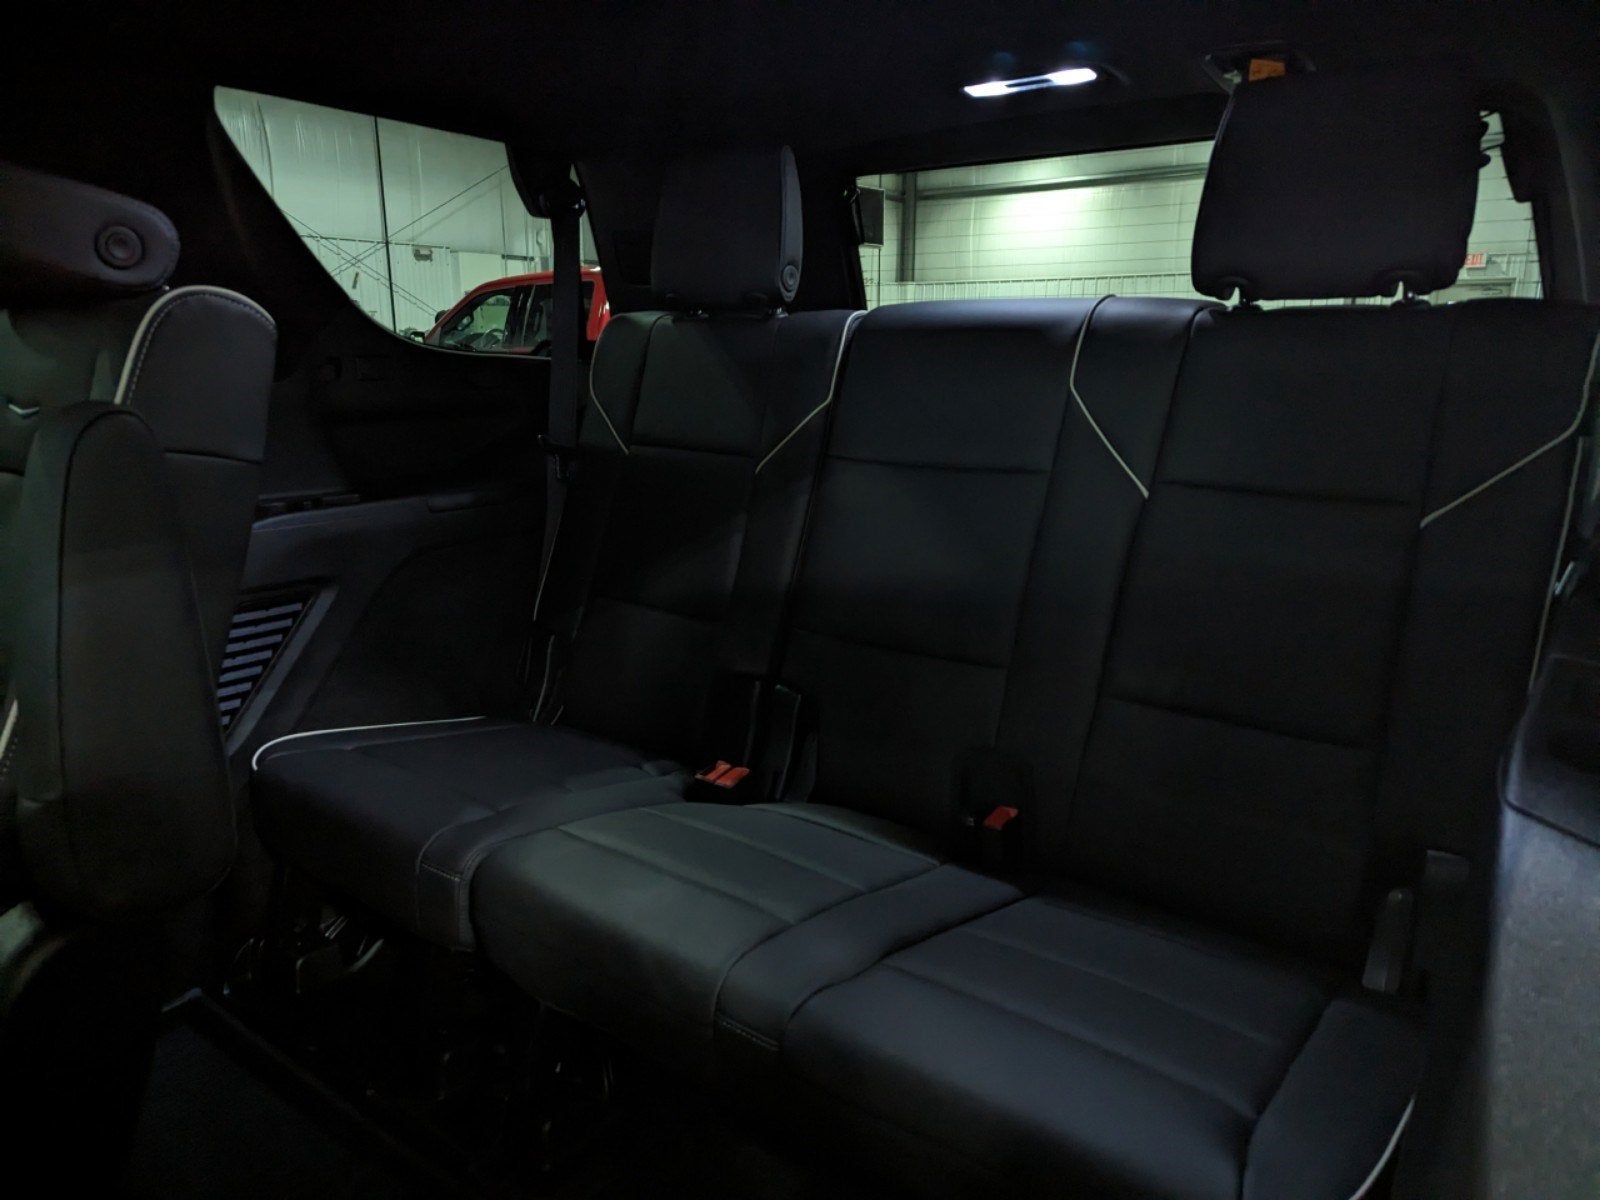 2023 Cadillac Escalade 4WD Premium Luxury Premium Leather Heated/Cooled Preferred Equipment Pkg Nav